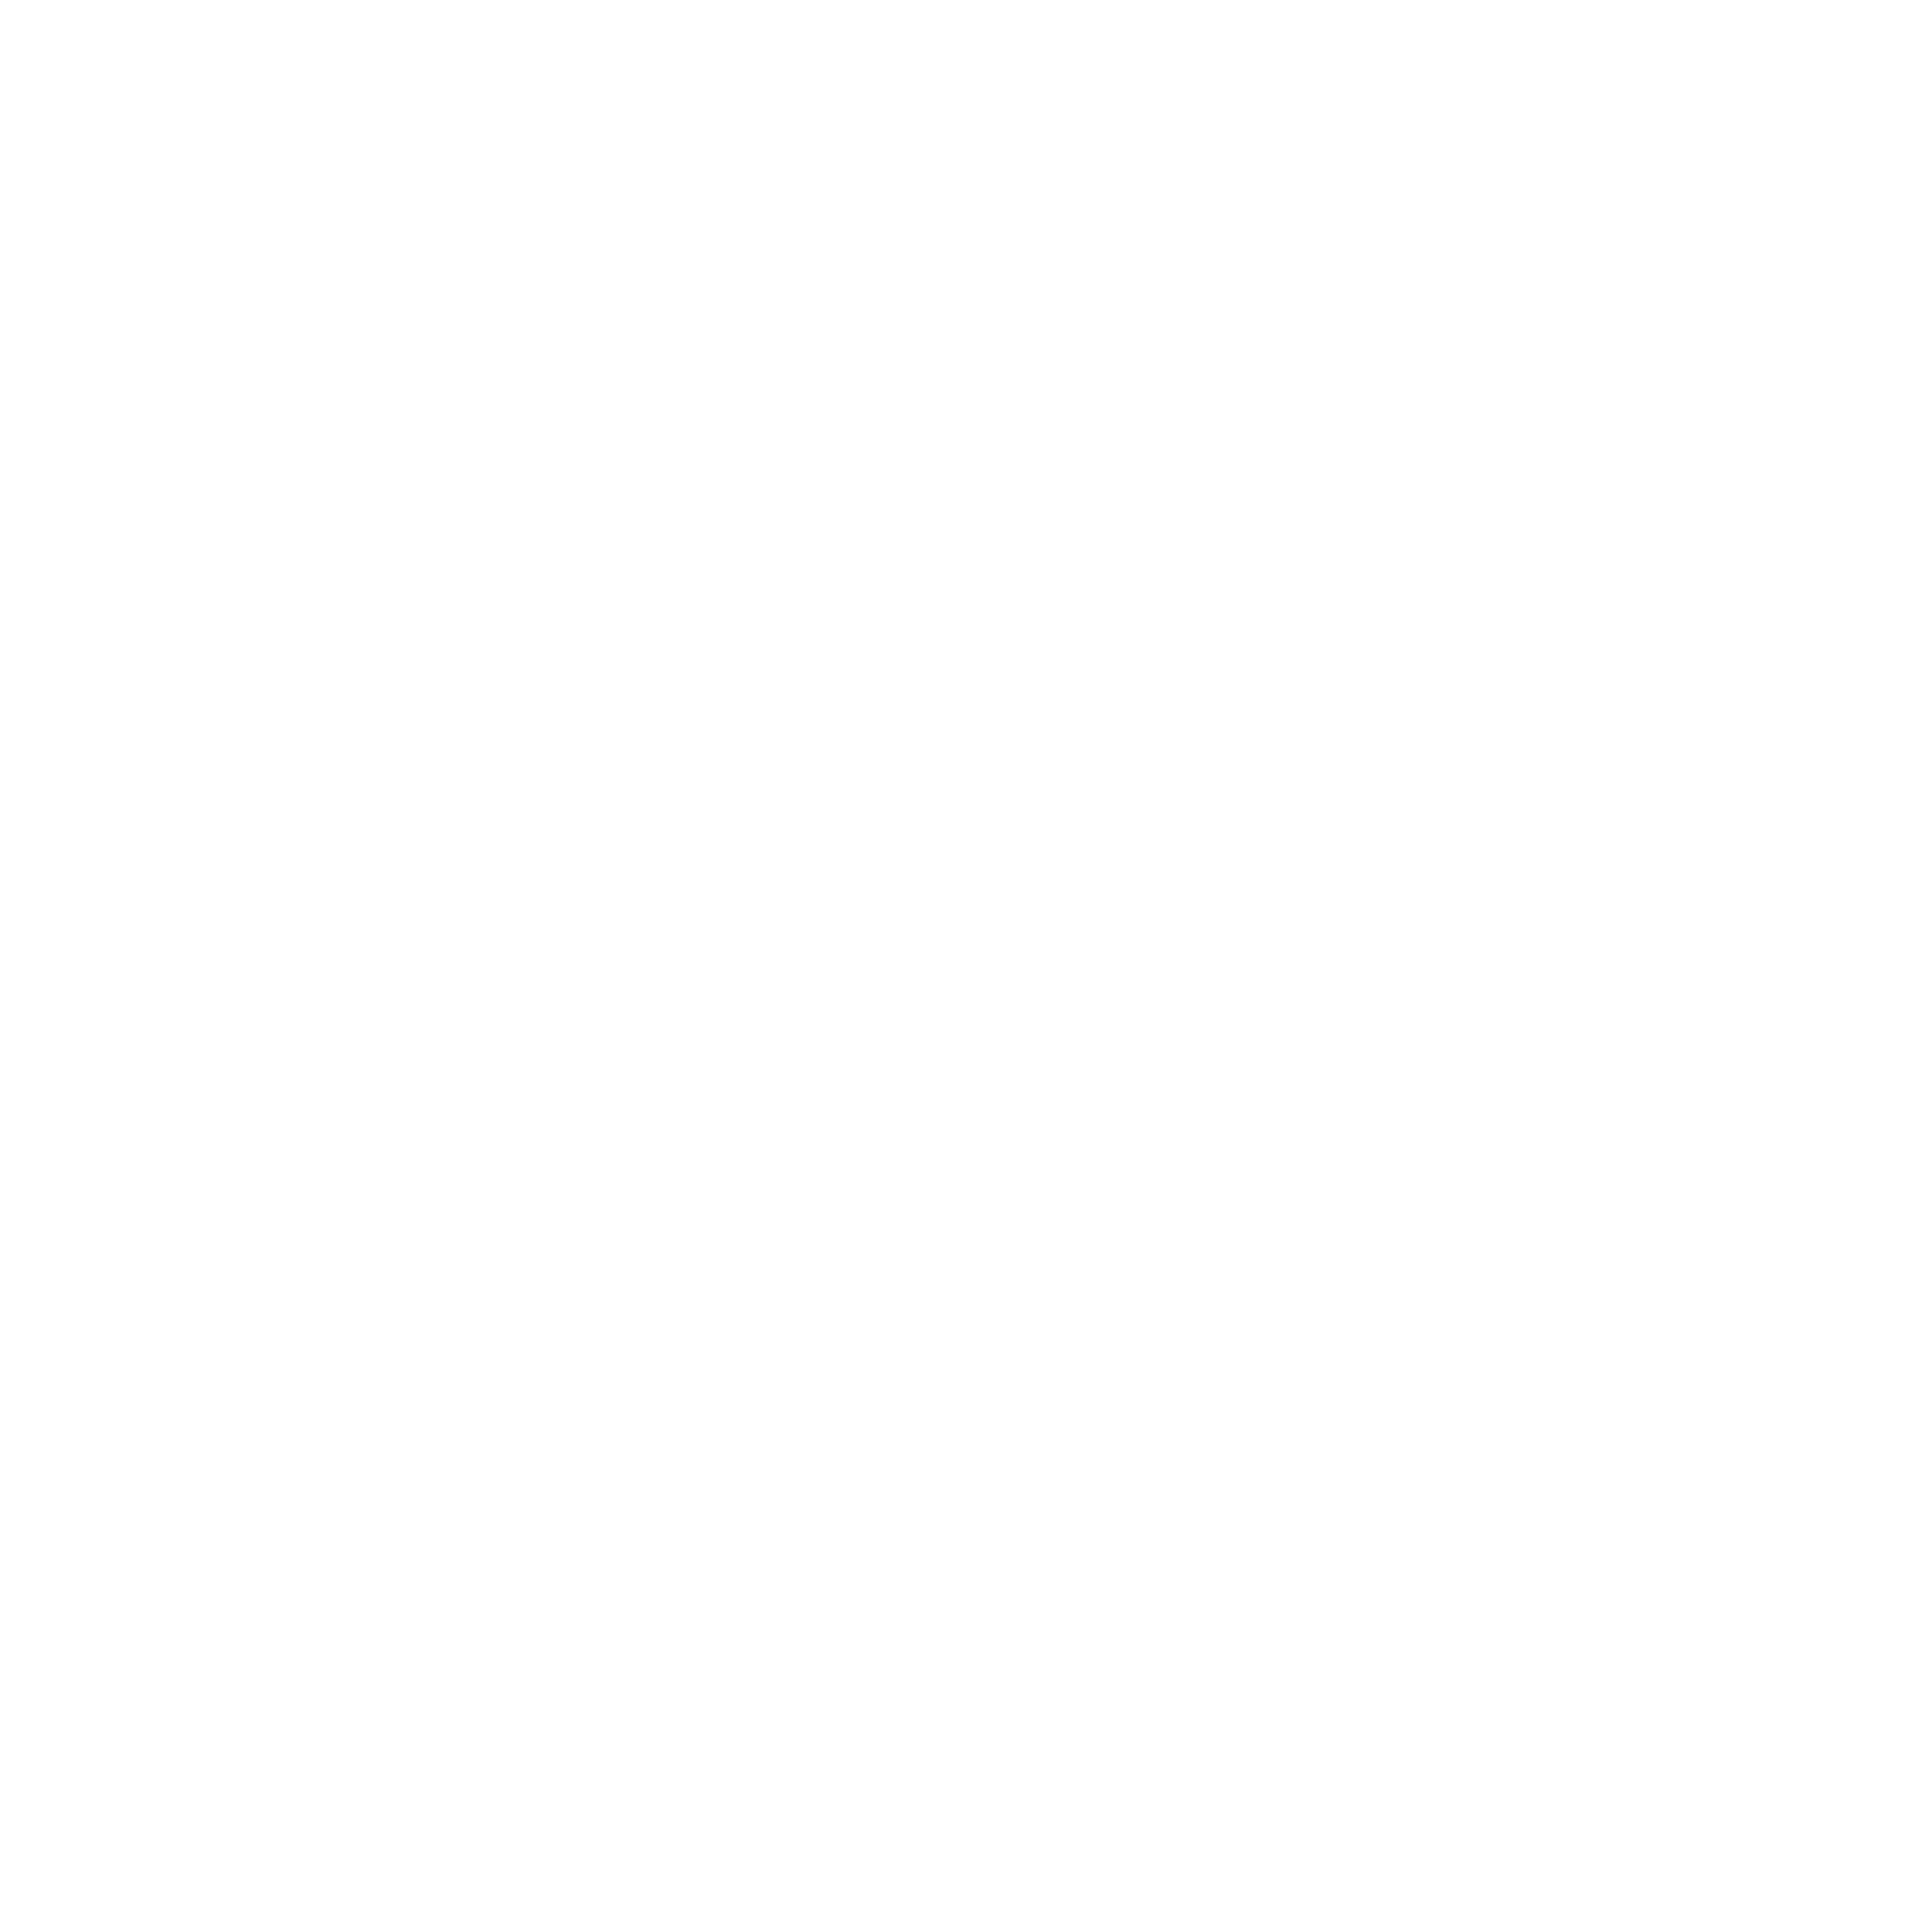 BPM-0124-Retail-WHT_Vintage Stock